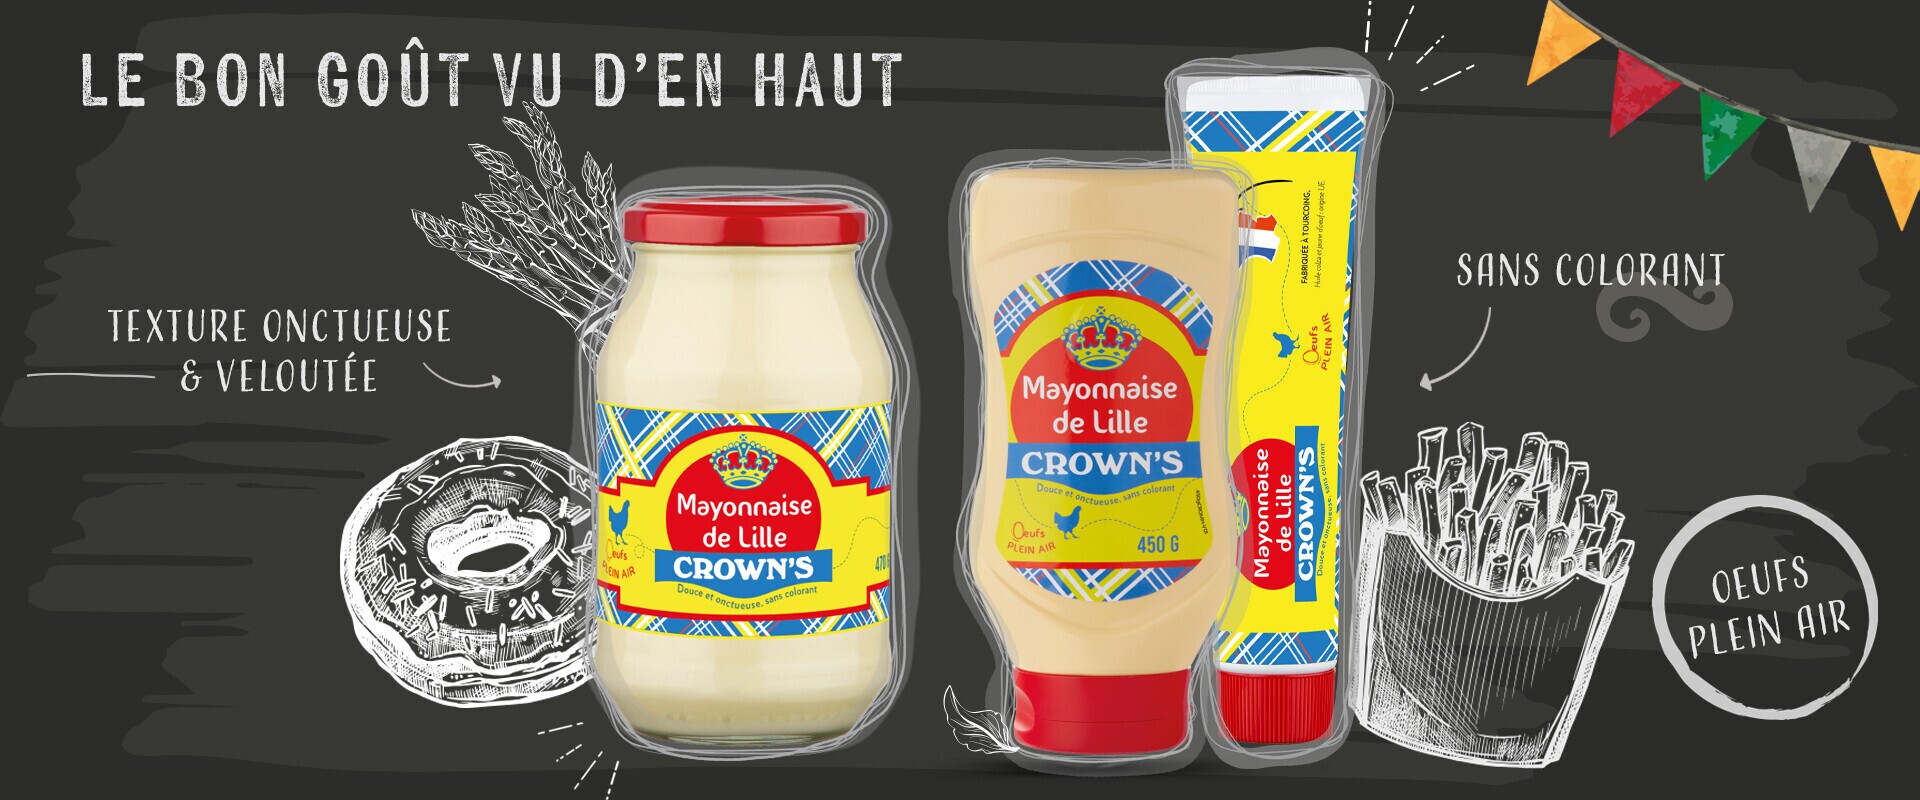 La mayonnaise de Lille